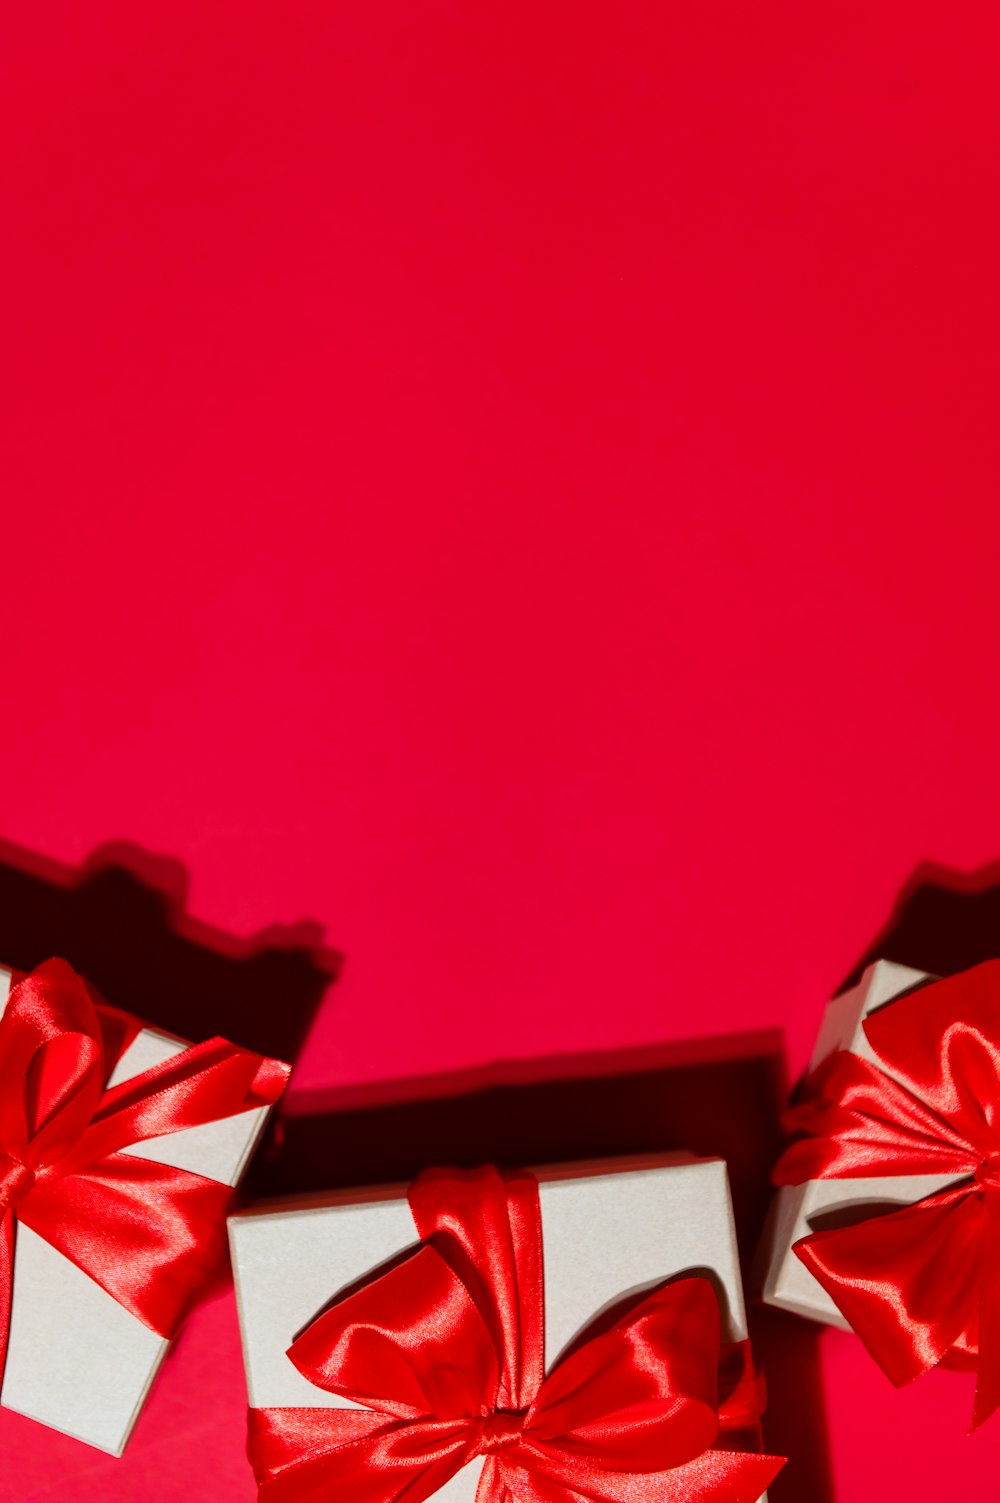 빨간색 배경에 빨간색 리본이 있는 두 개의 흰색 상자